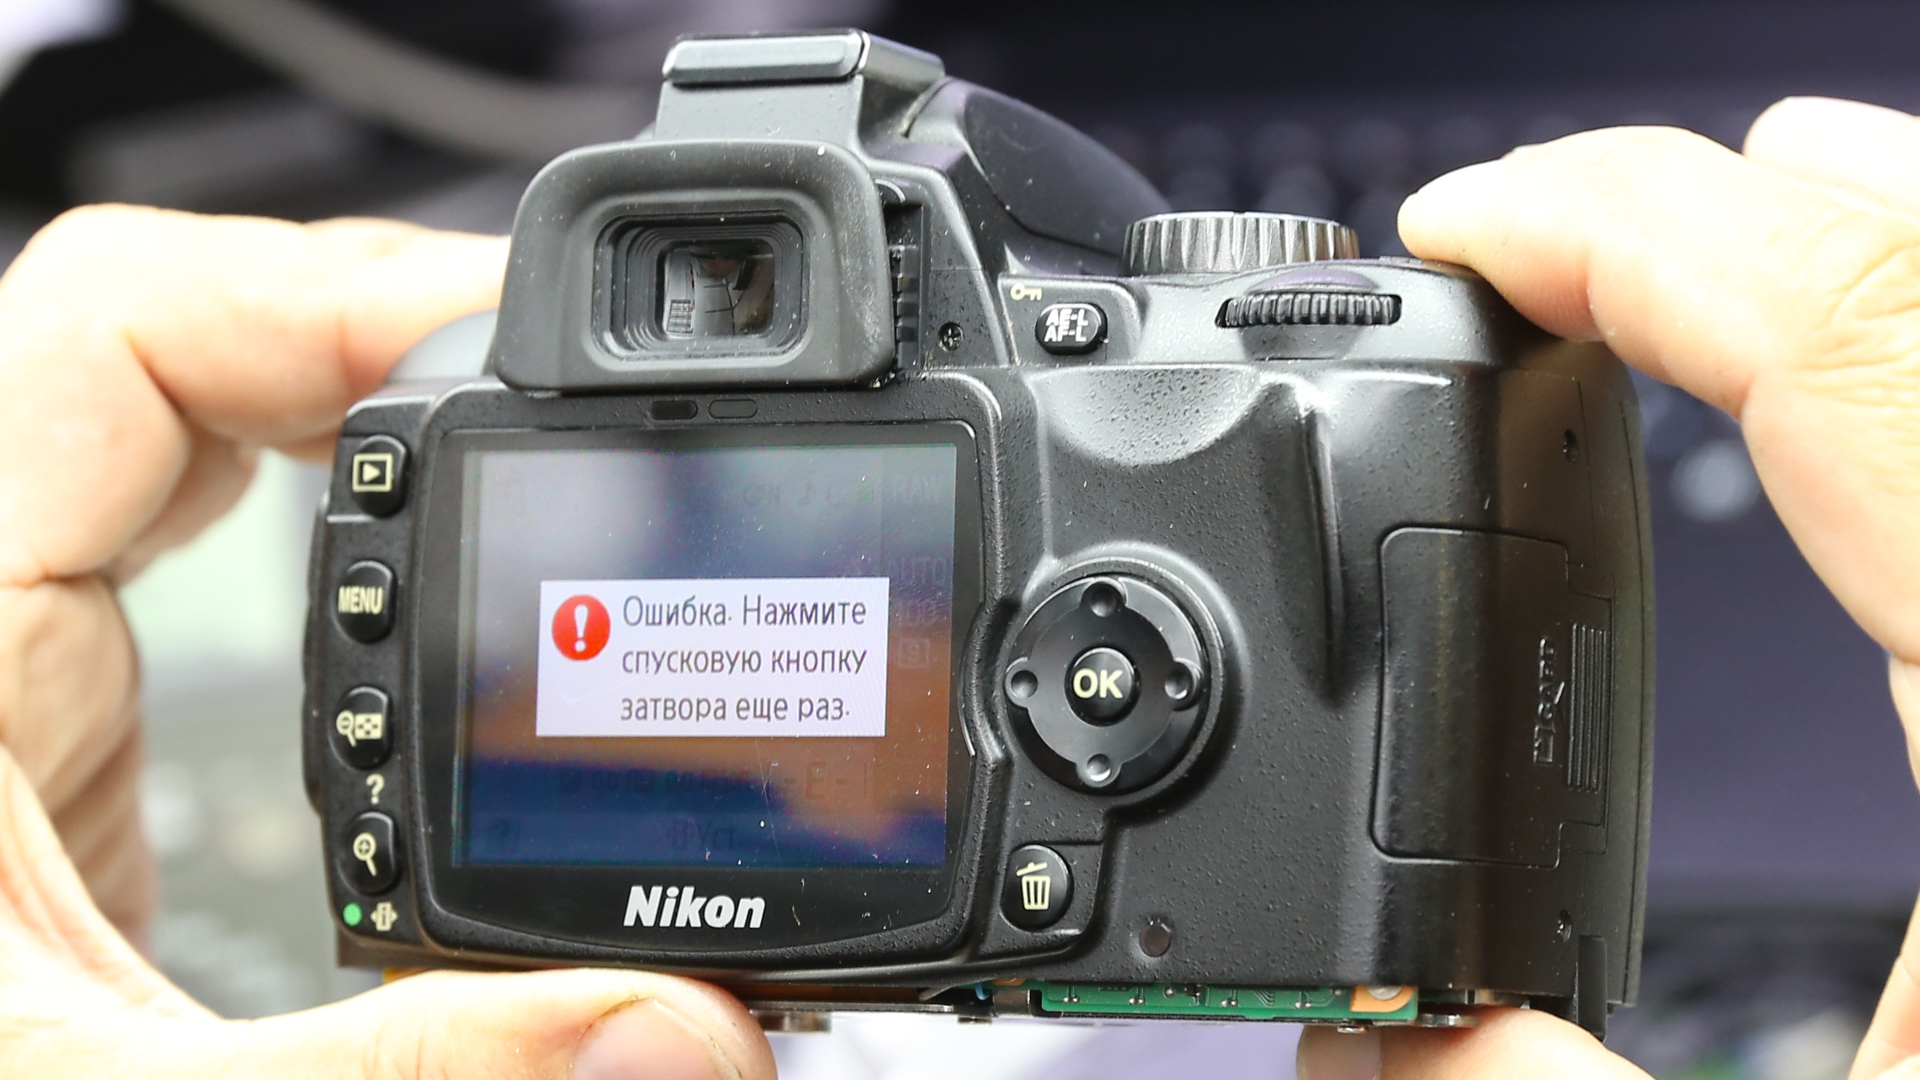 ошибка спуска затвора Nikon D60